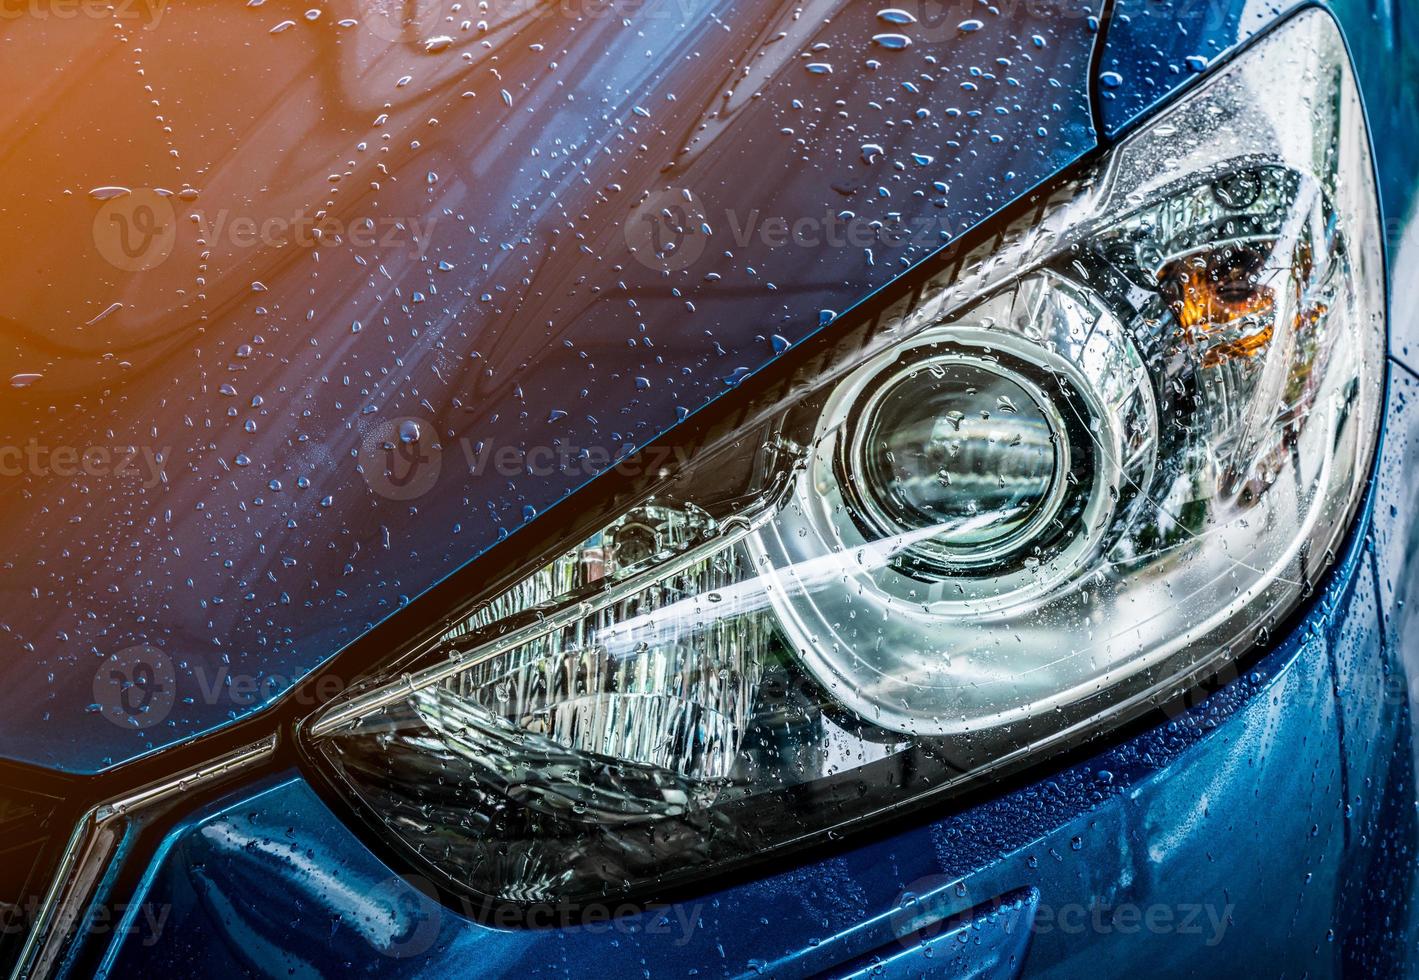 carro suv compacto azul com design esportivo e moderno está lavando com água. conceito de negócio de serviço de cuidado de carro. carro coberto com gotas de água após a limpeza com spray de água de alta pressão foto